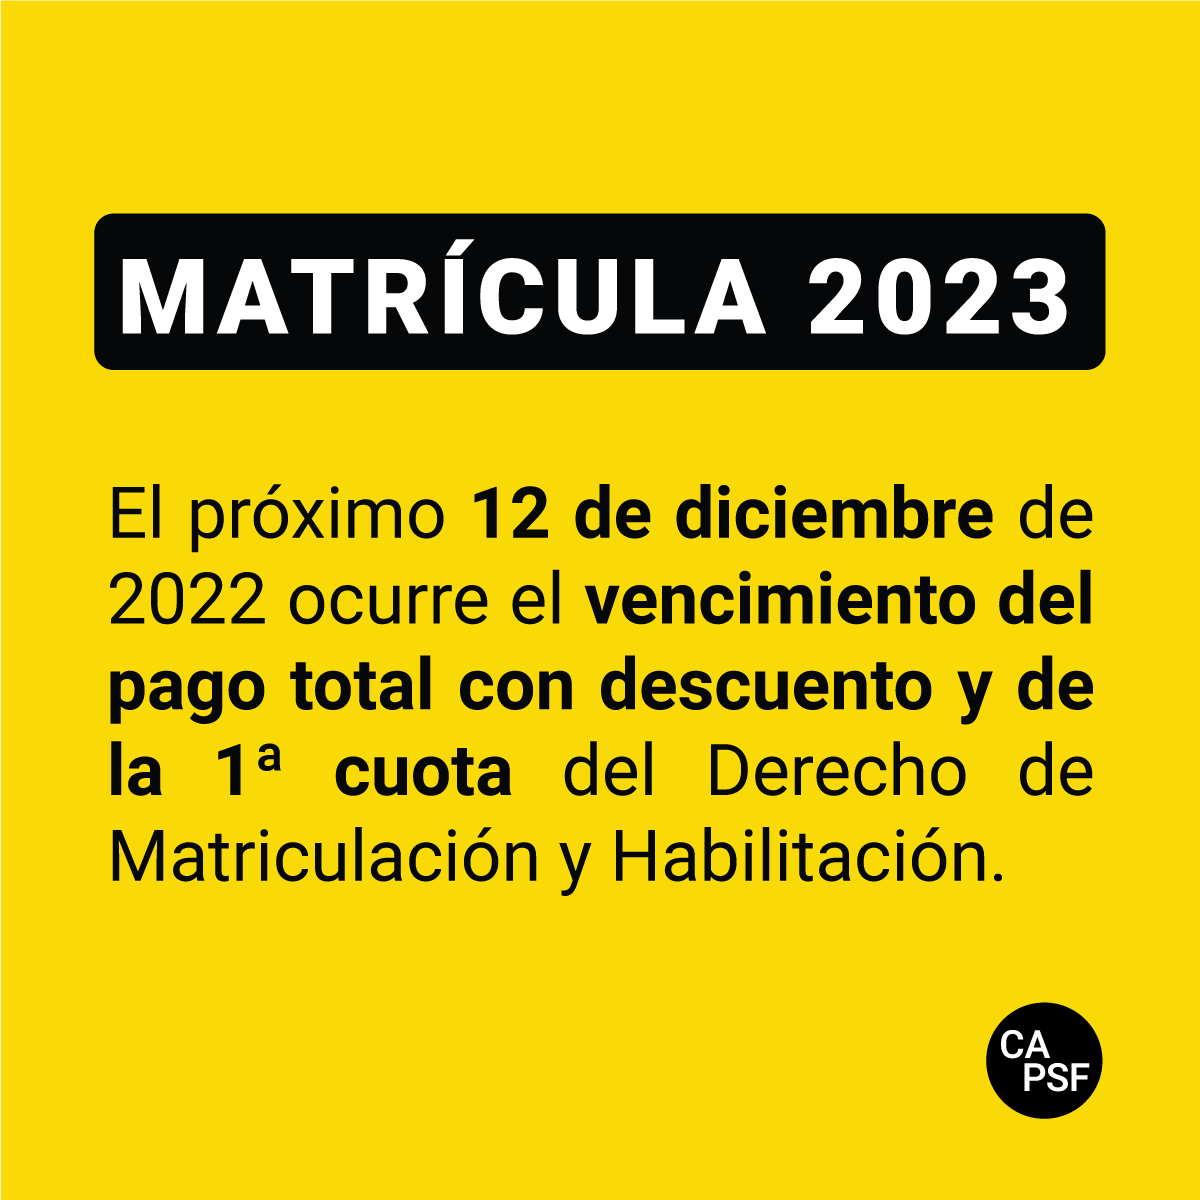 Matrícula 2023